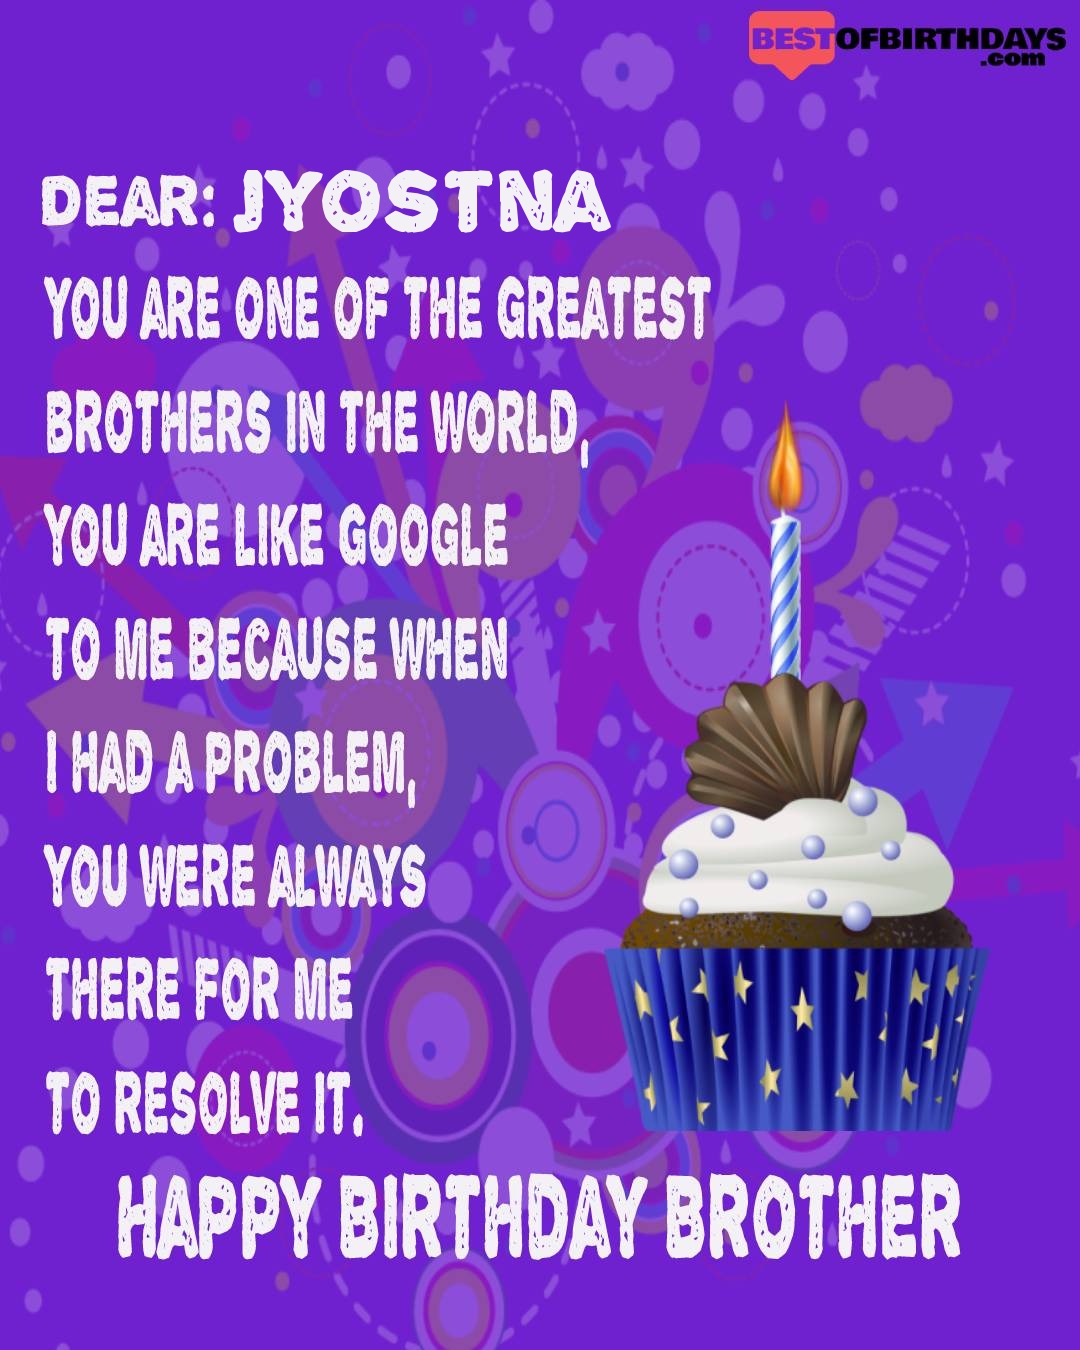 Happy birthday jyostna bhai brother bro